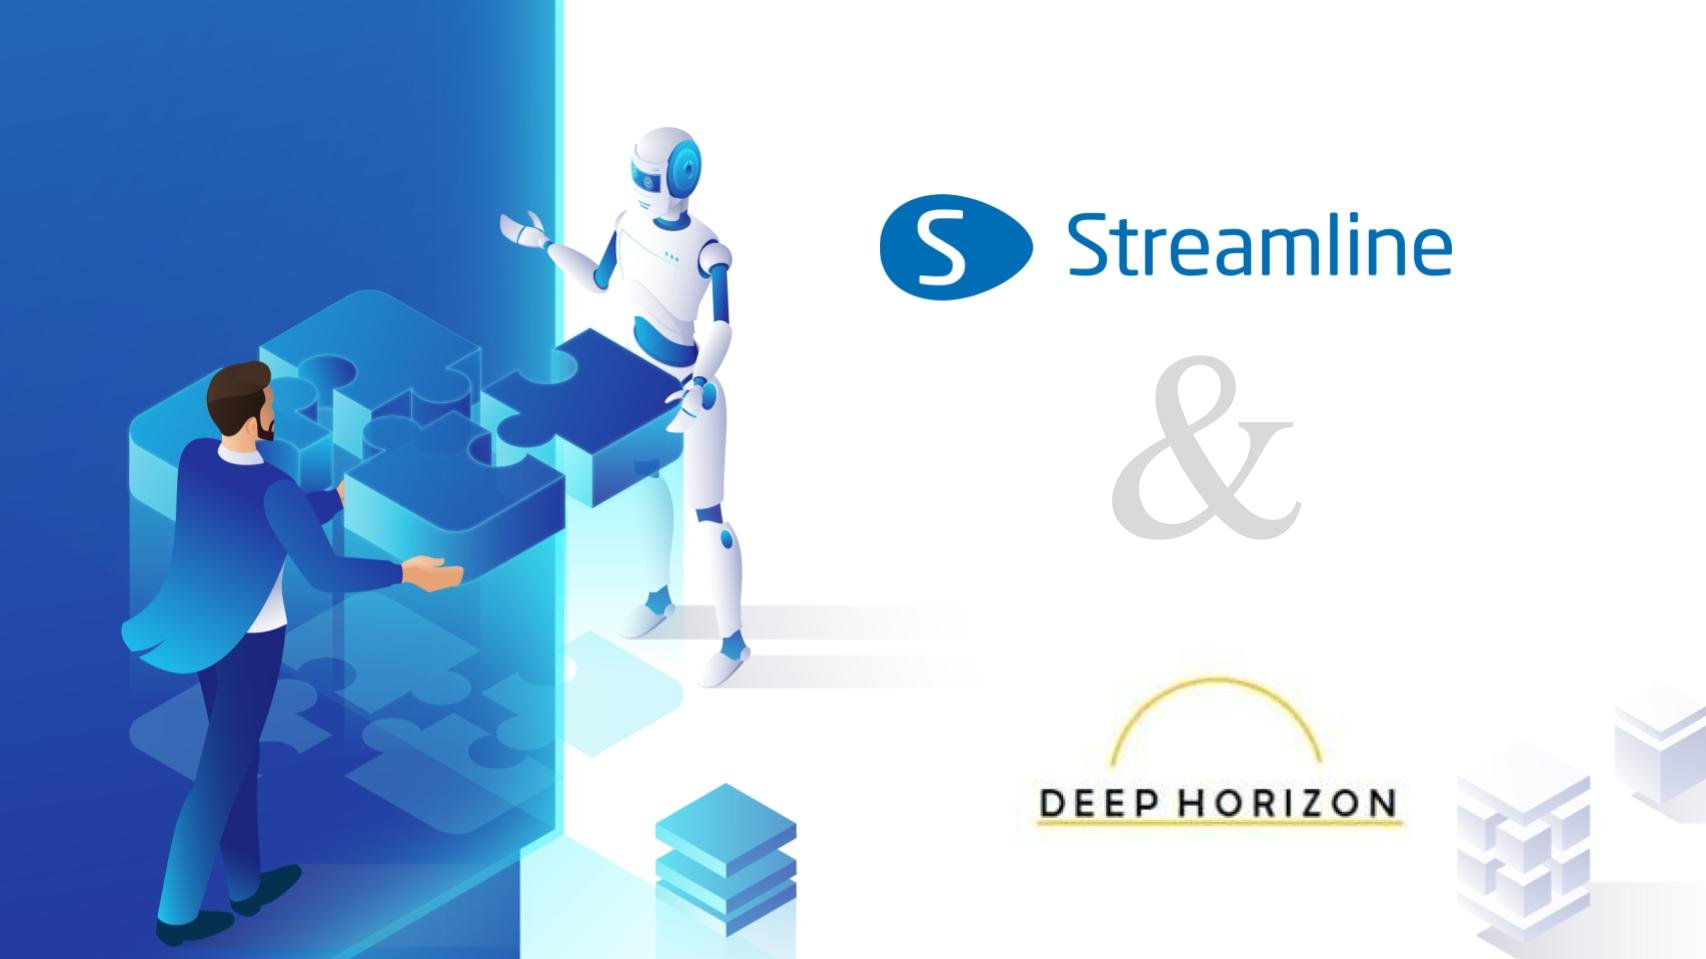 GMDH Streamline werkt samen met Deep Horizon Solutions om de veerkracht van de toeleveringsketen te versterken